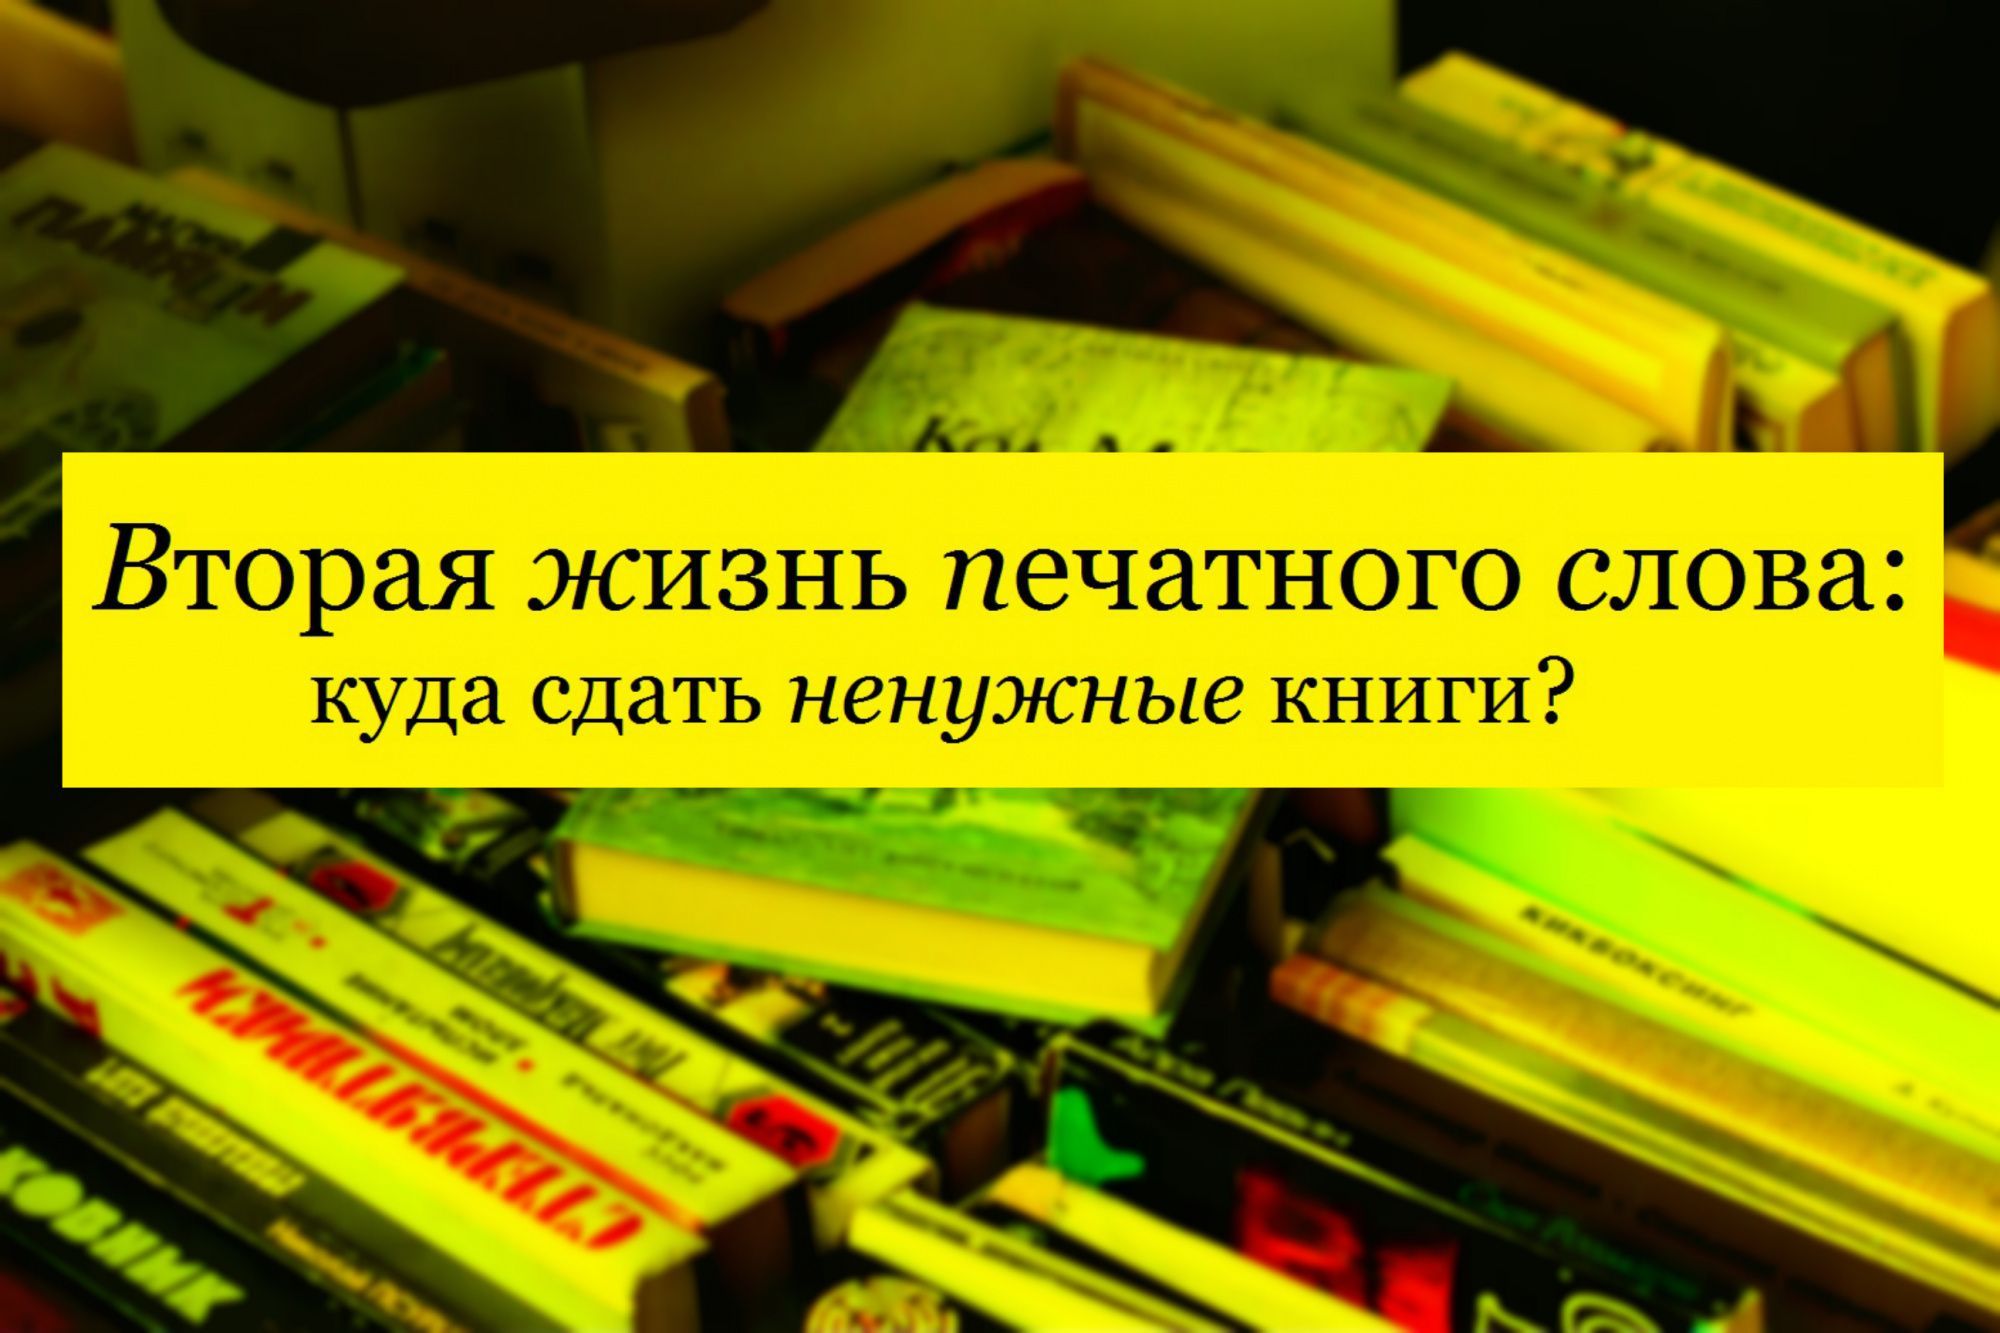 Куда можно сдать старые. Сдать старые книги. Где книги можно сдавать. Куда можно сдать старые книги. Куда сдать ненужные книги.